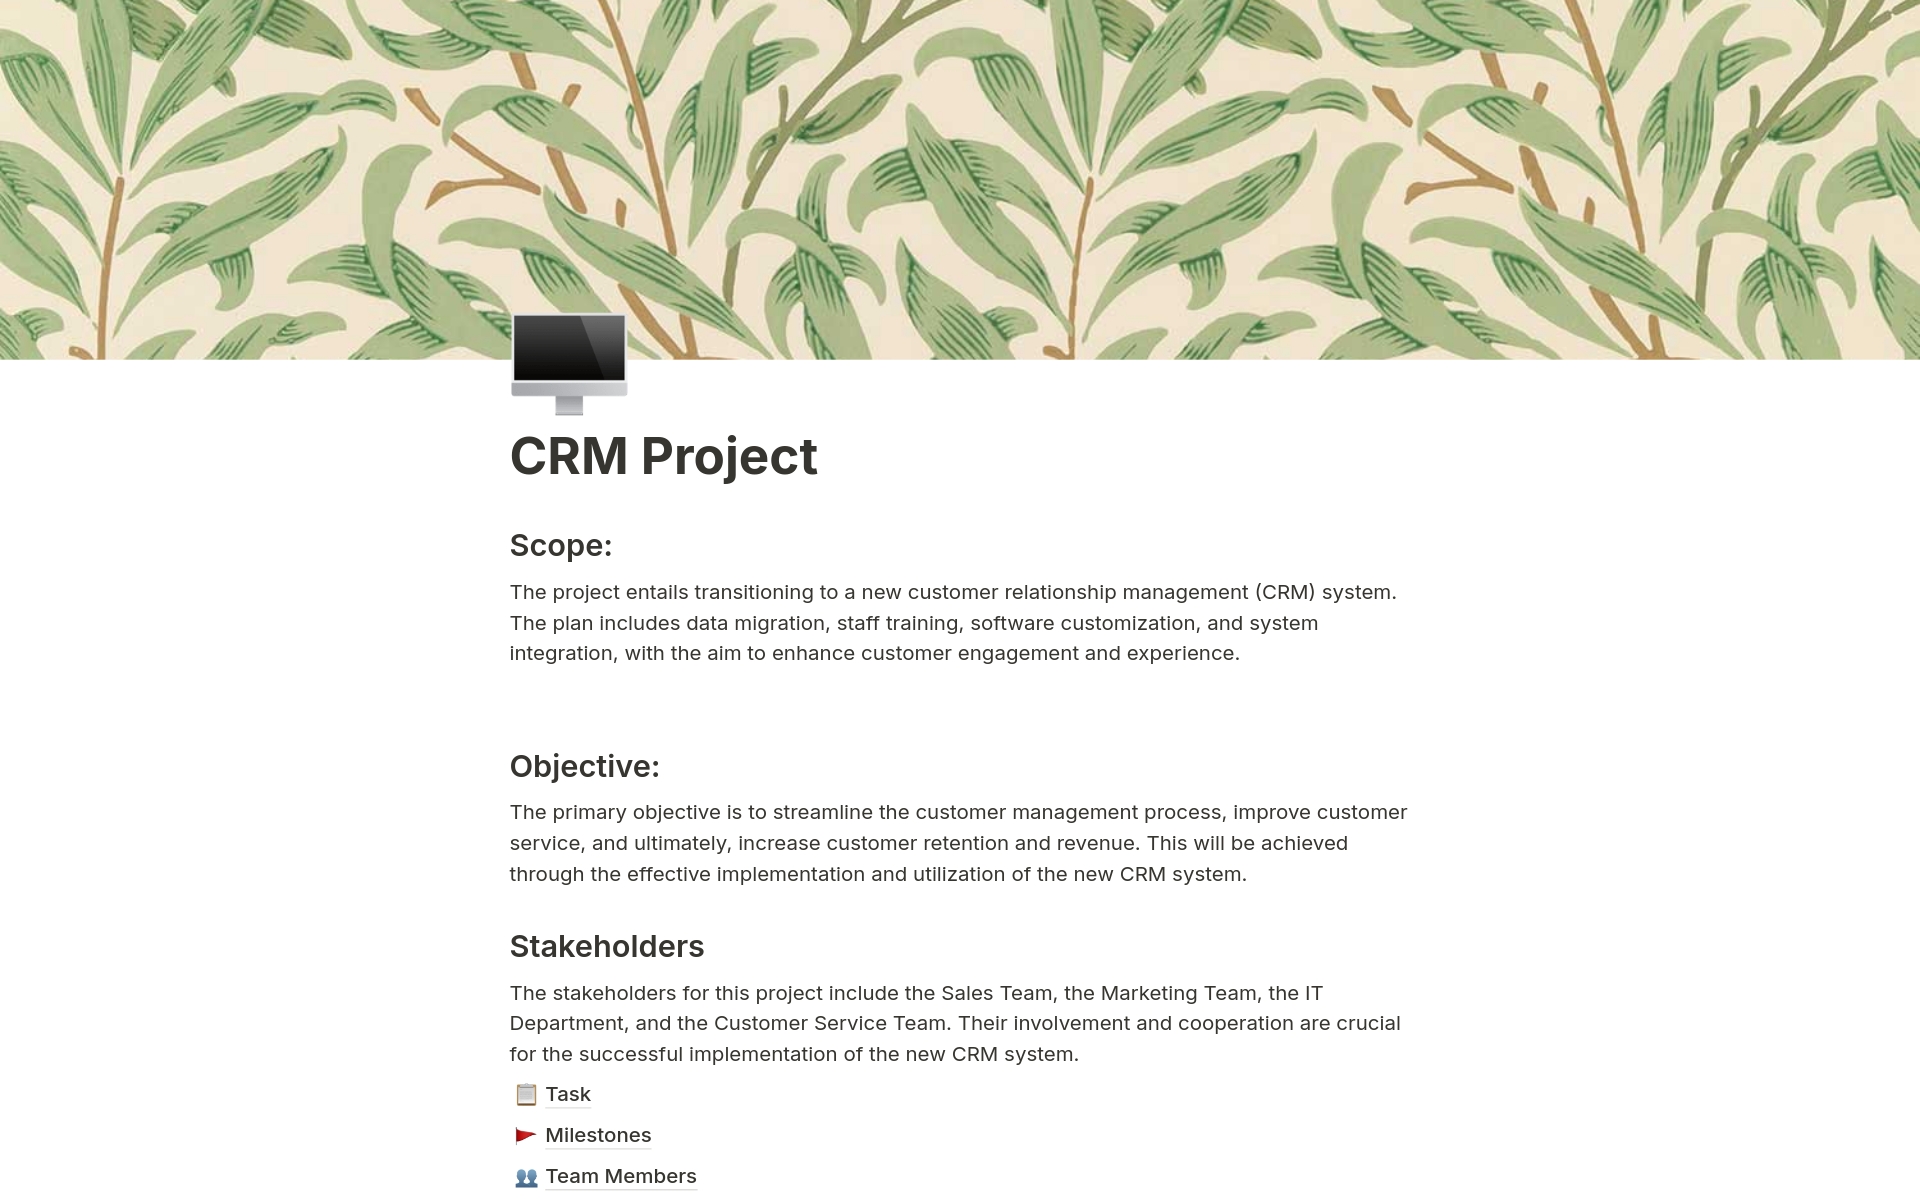 Vista previa de plantilla para CRM Project Management